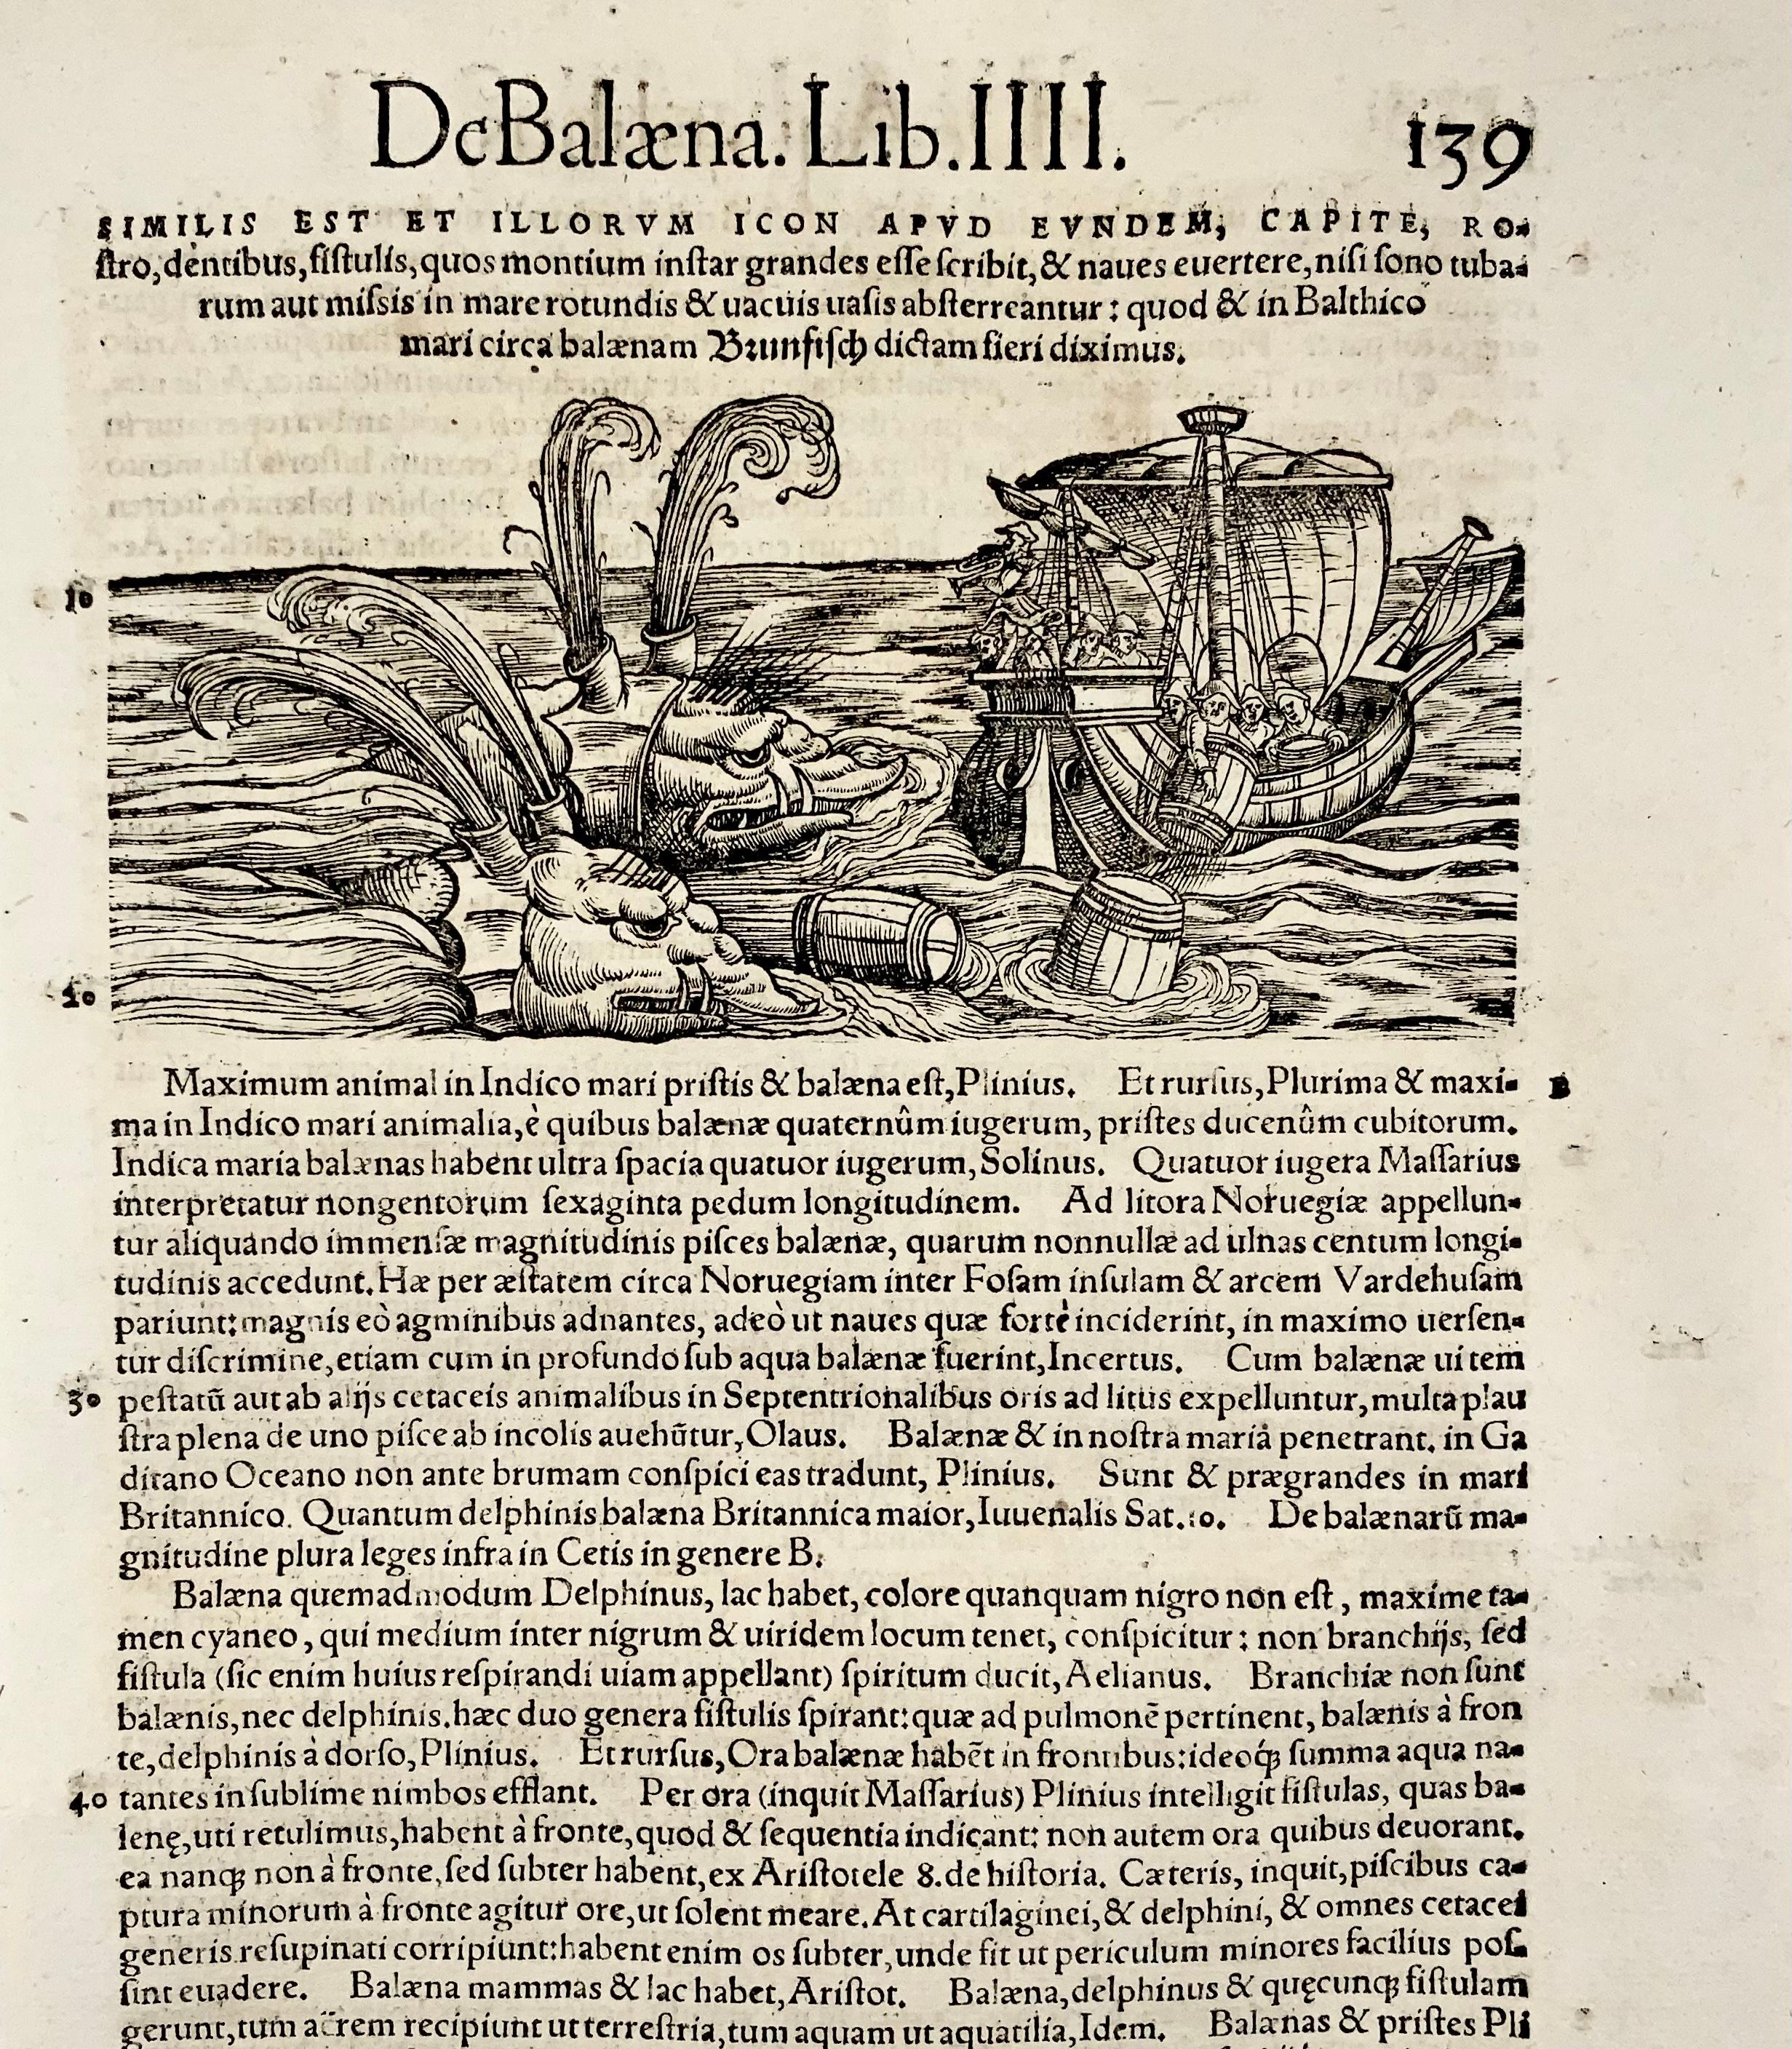 Monströser Wal greift ein Segelschiff an.

Unbekannter Holzschnittkünstler für Konrad Gesner (alias Conrad Gesner; Philiatrus Euonymus) (1516-1565)

Schönes Holzschnittblatt im Folioformat.

Maße: 38 x 21,7 cm

Ausgegeben in: Historiae